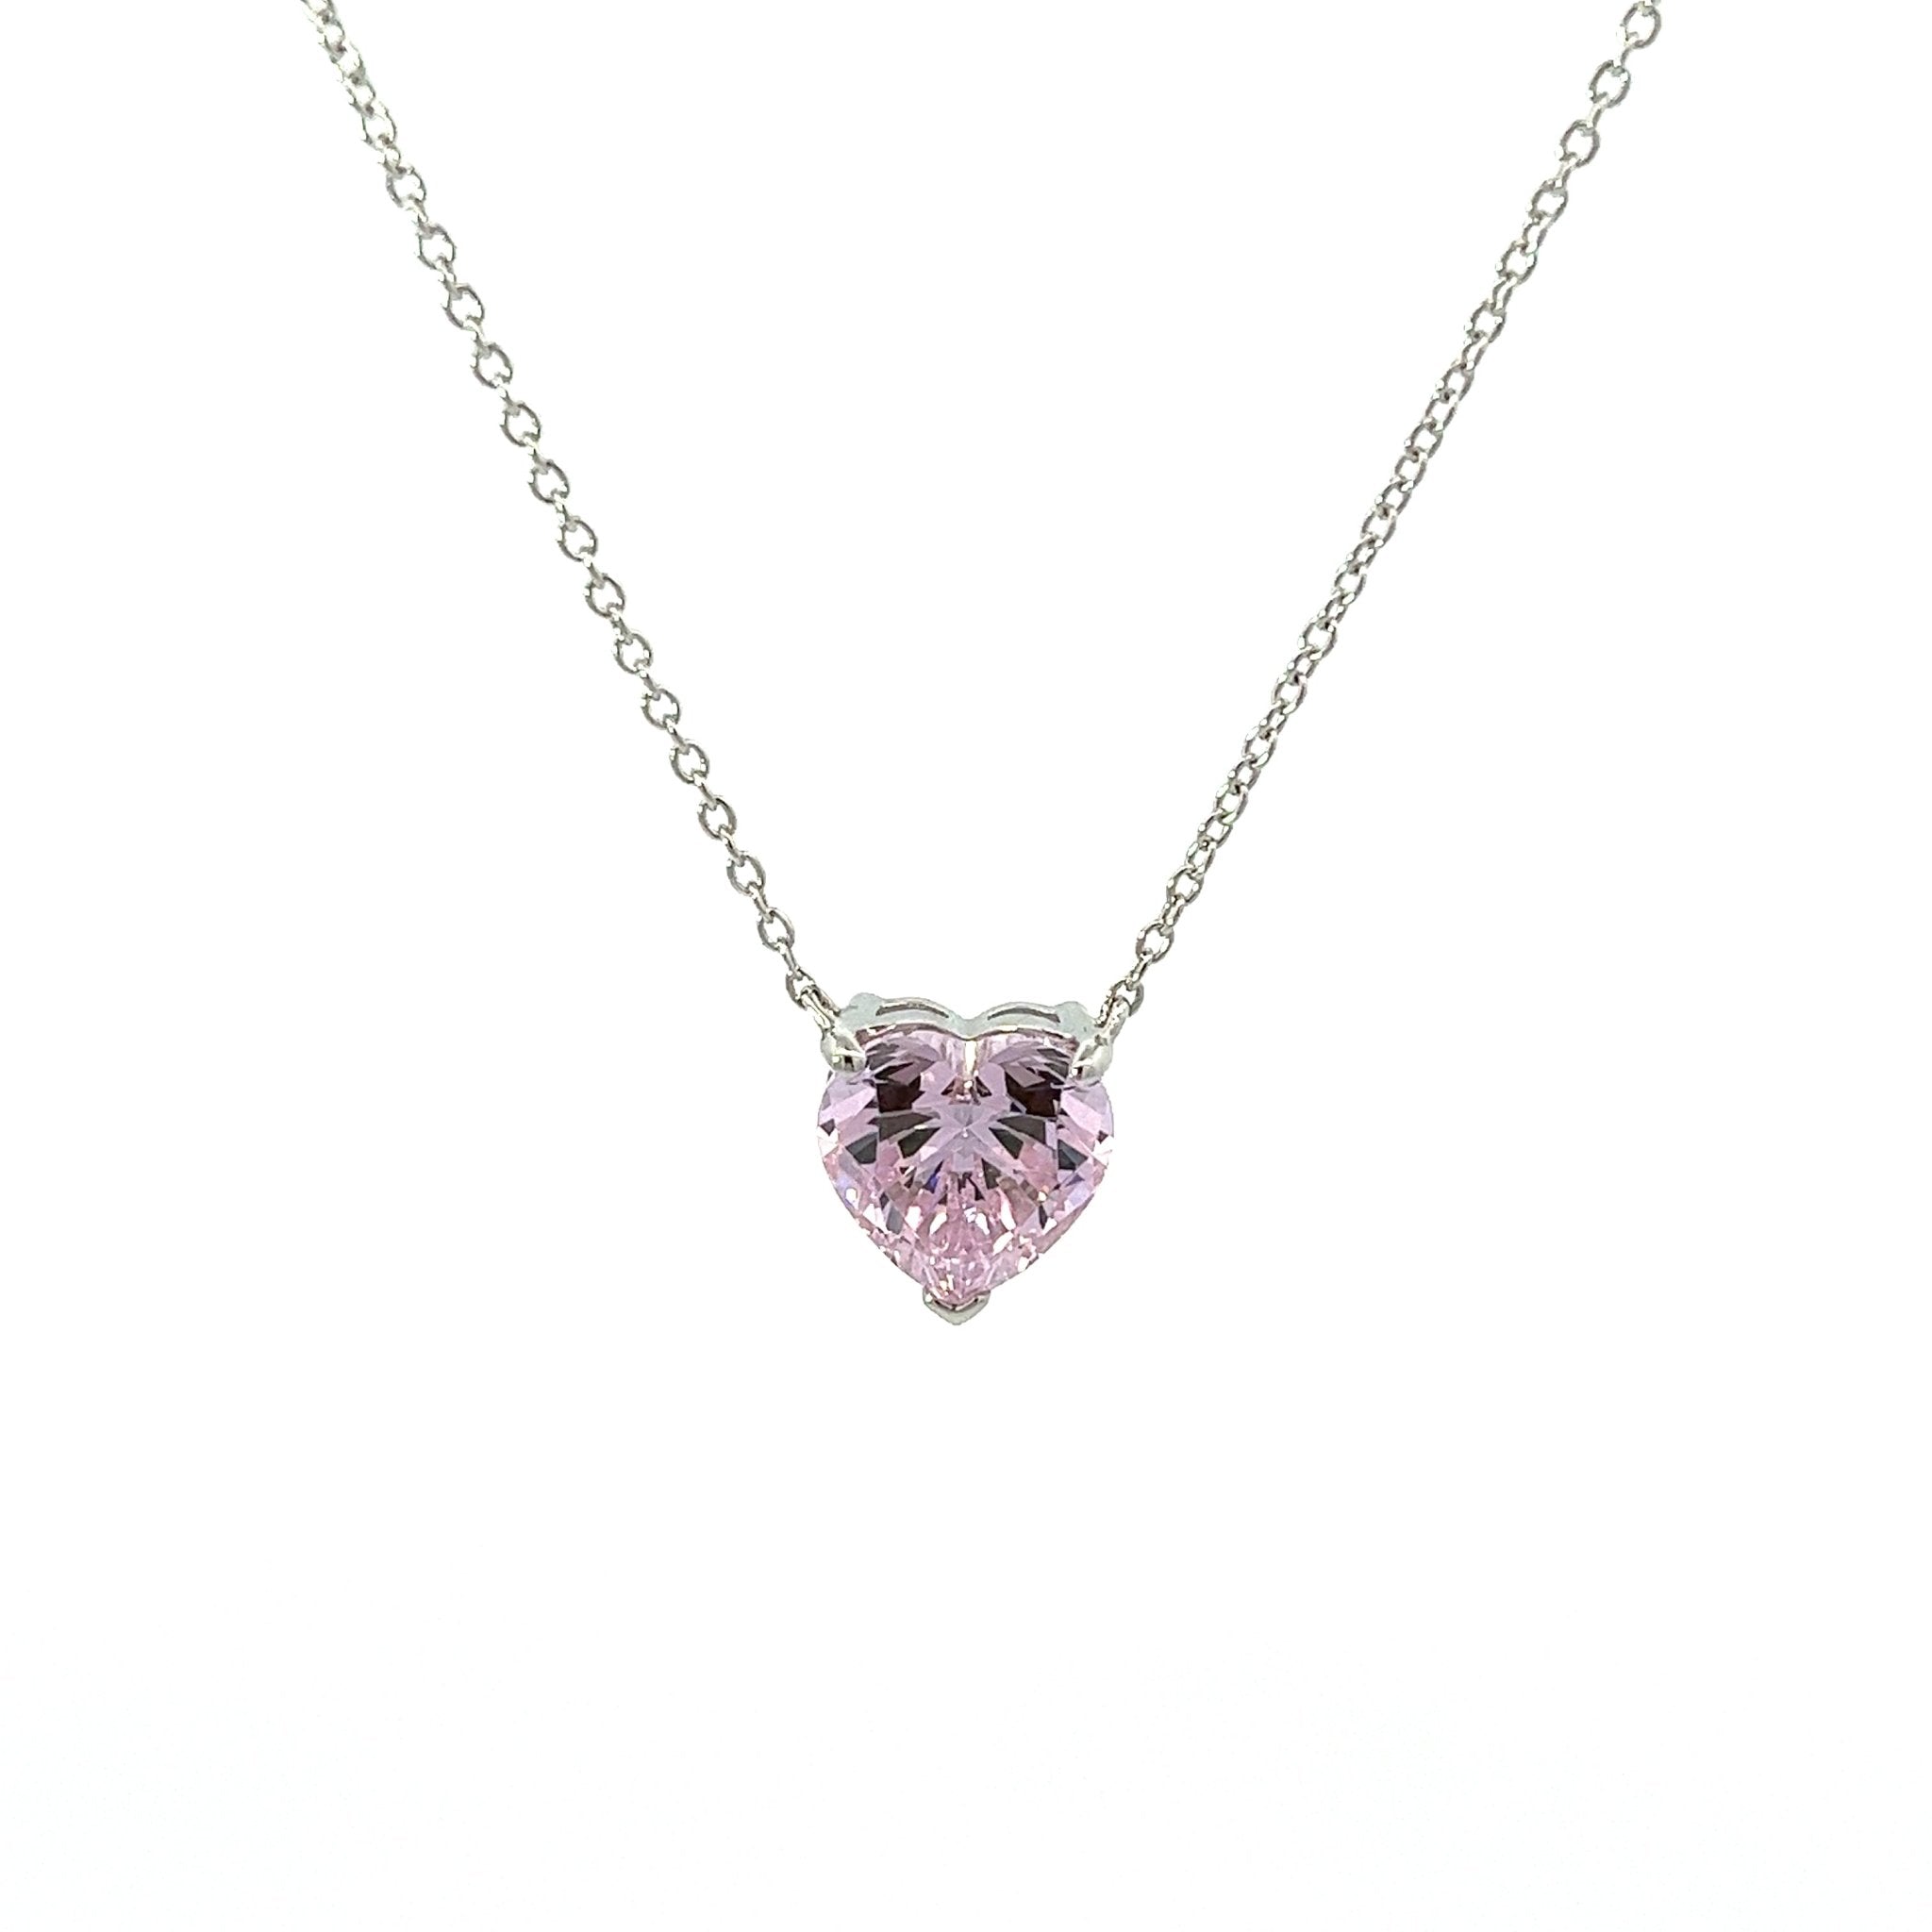 Diamond Alternative Heart Silver Necklace by Natkina